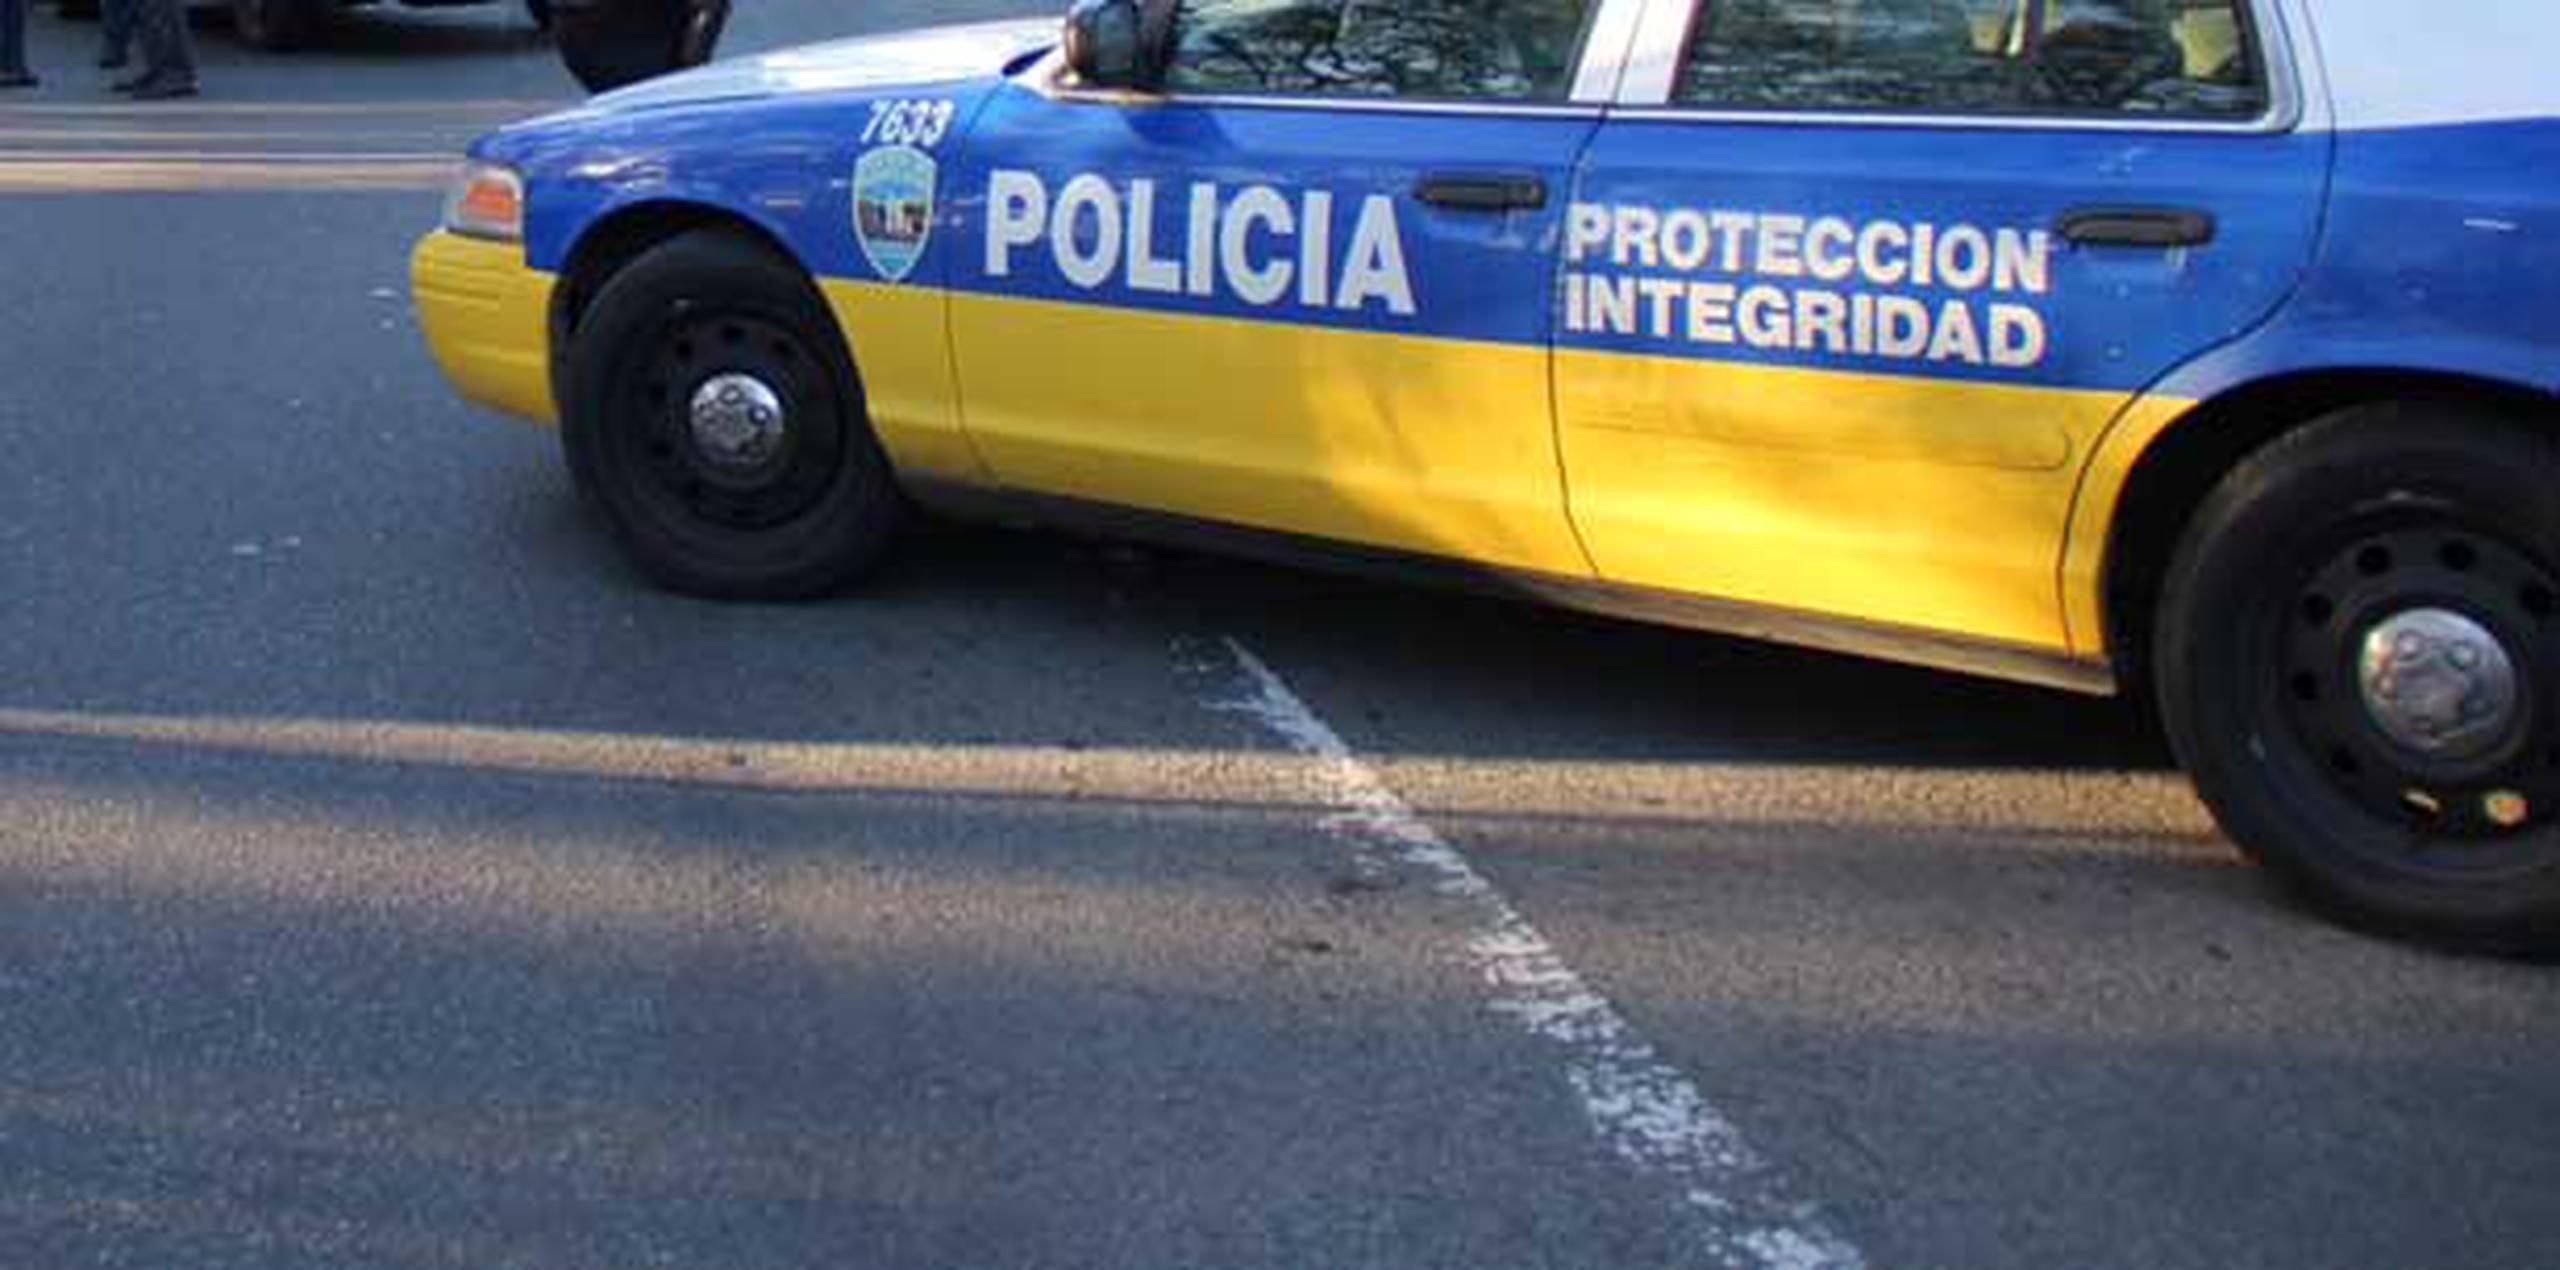 El auto Nissan era conducido por Carlos Rivera Virella, de 46 años y residente de Corozal, dijo la Policía. (Archivo)